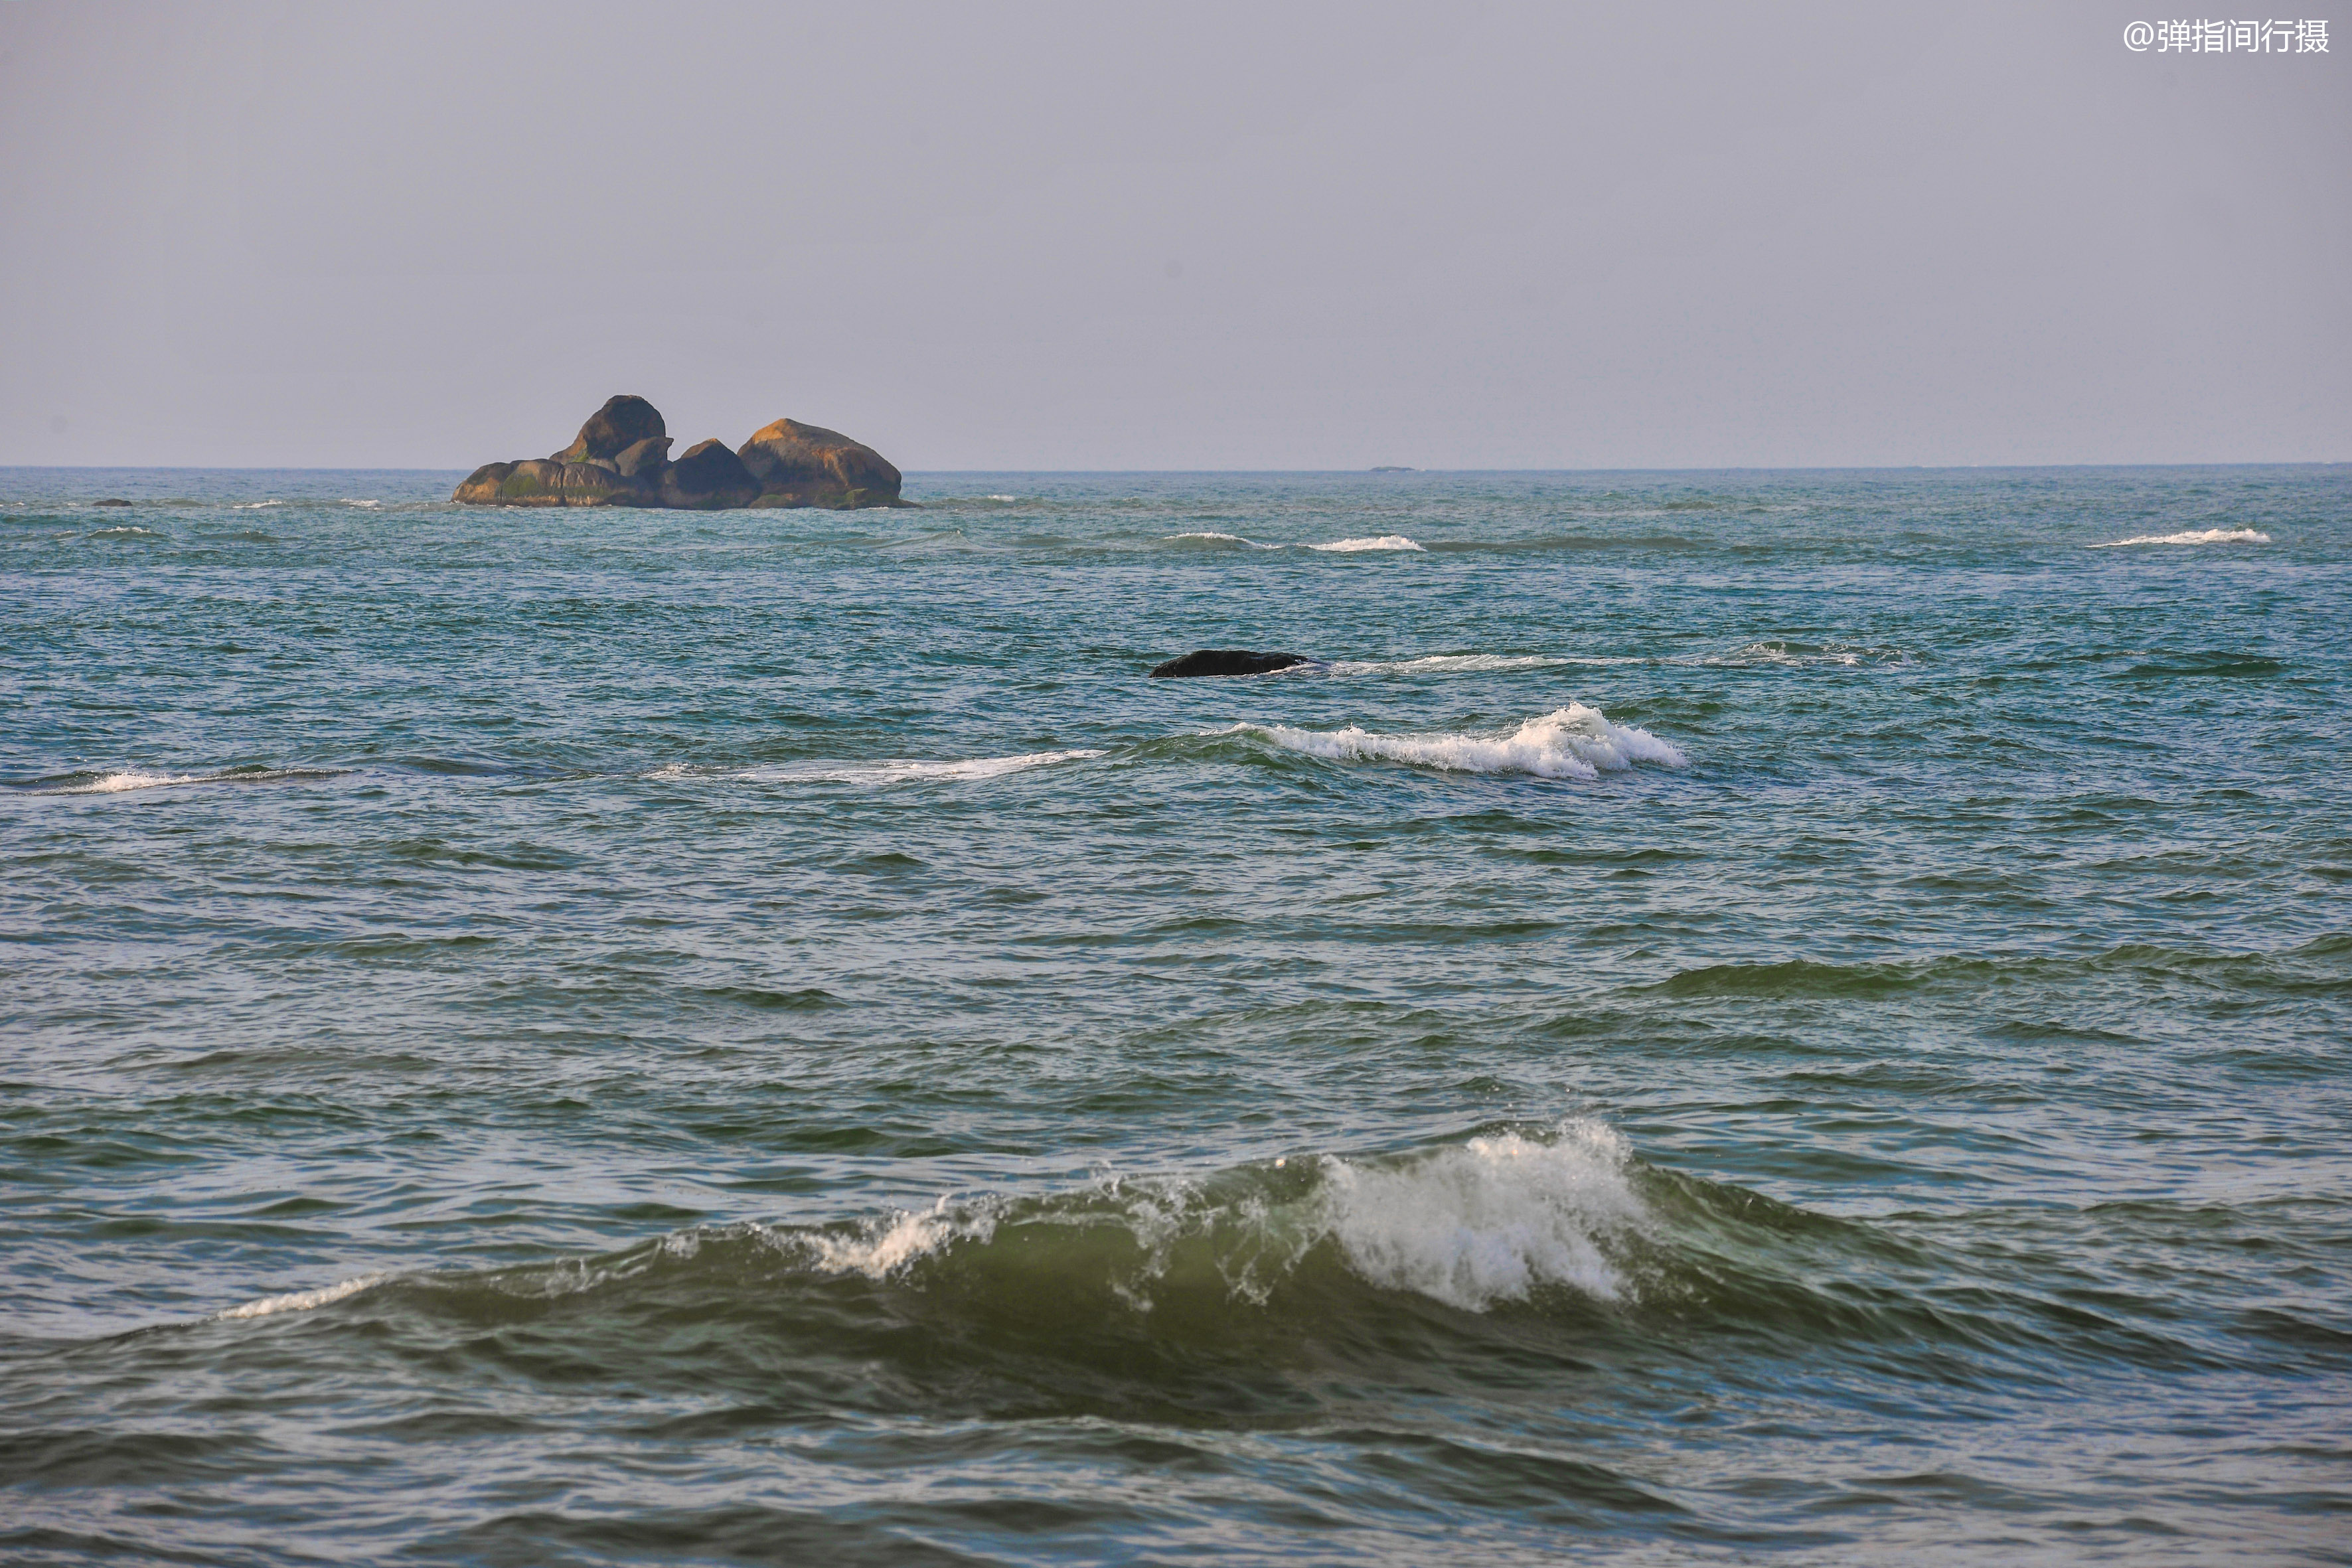 原创博鳌风水奇景:玉带滩分隔江河和大海,圣公石屹立大海庇护民安